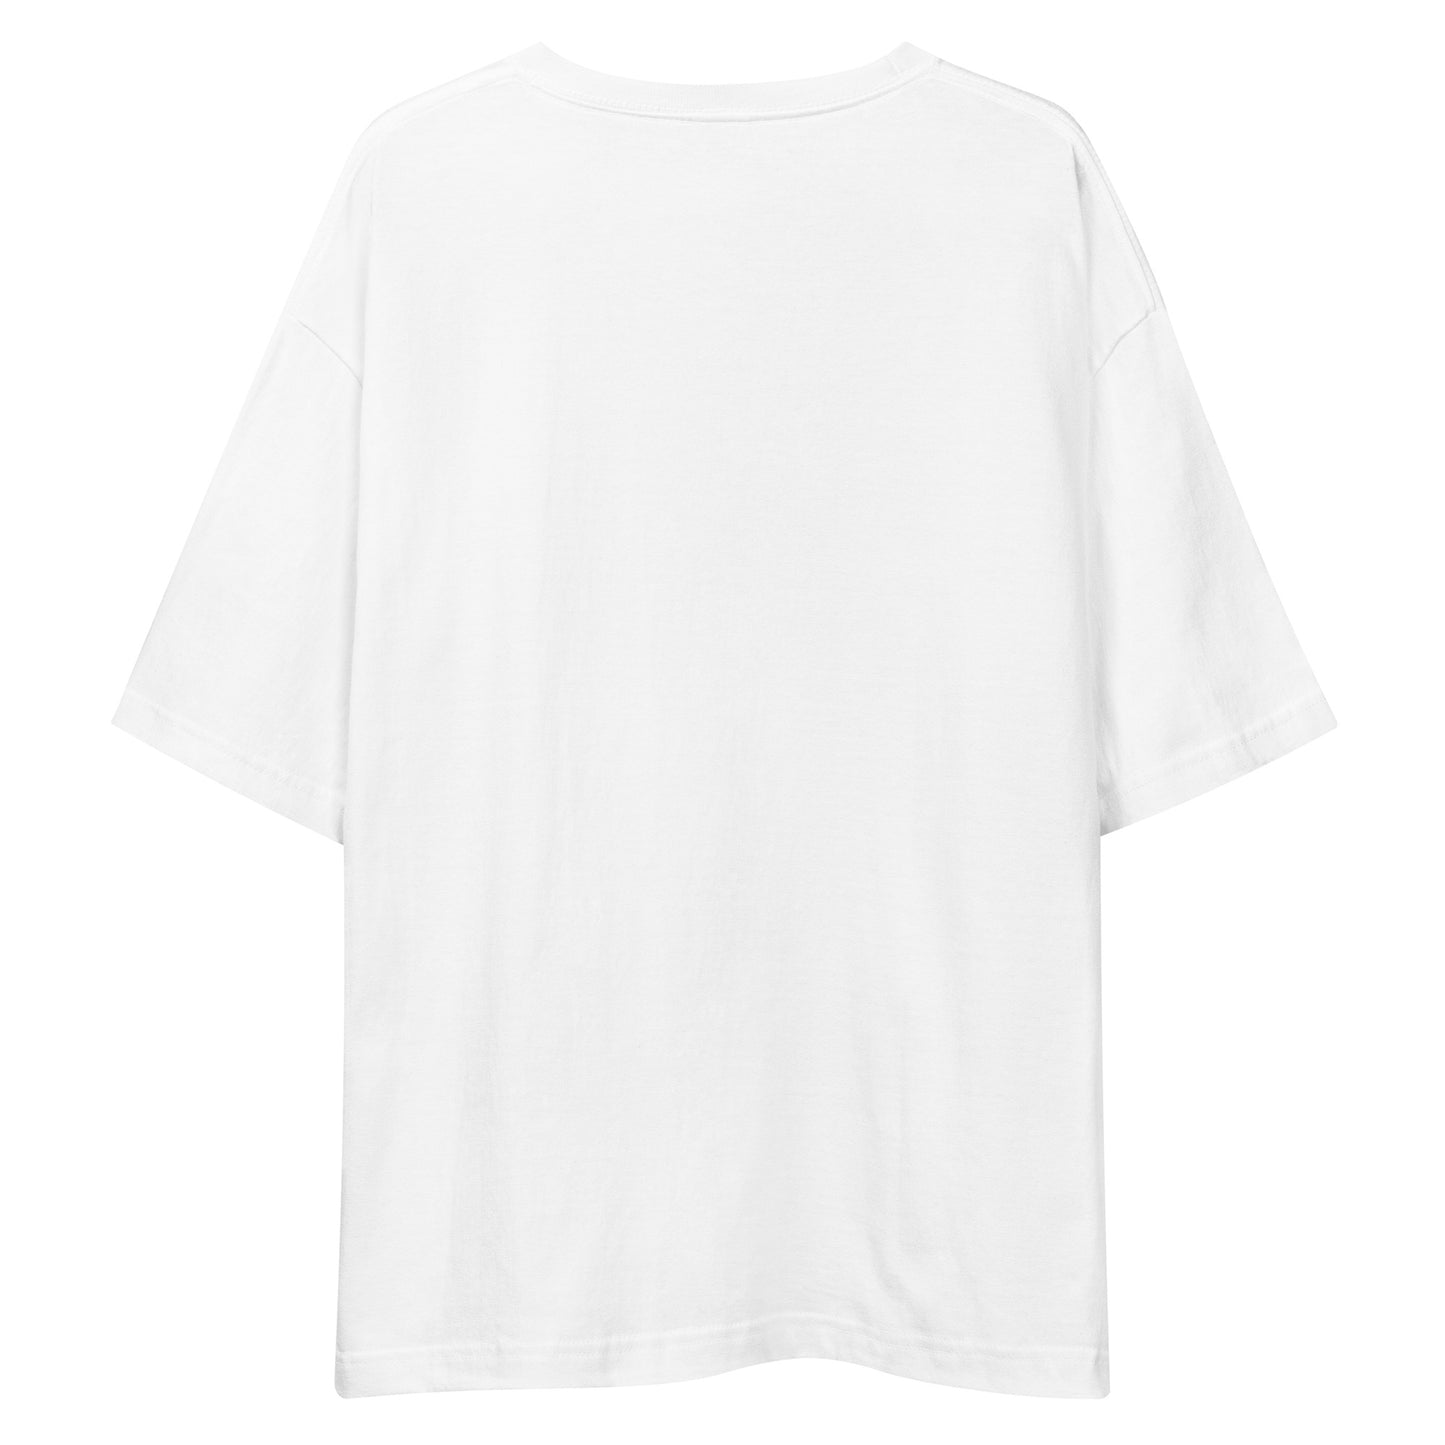 E236 - T-shirt/Siluet besar (MX menang : Putih/Hitam)